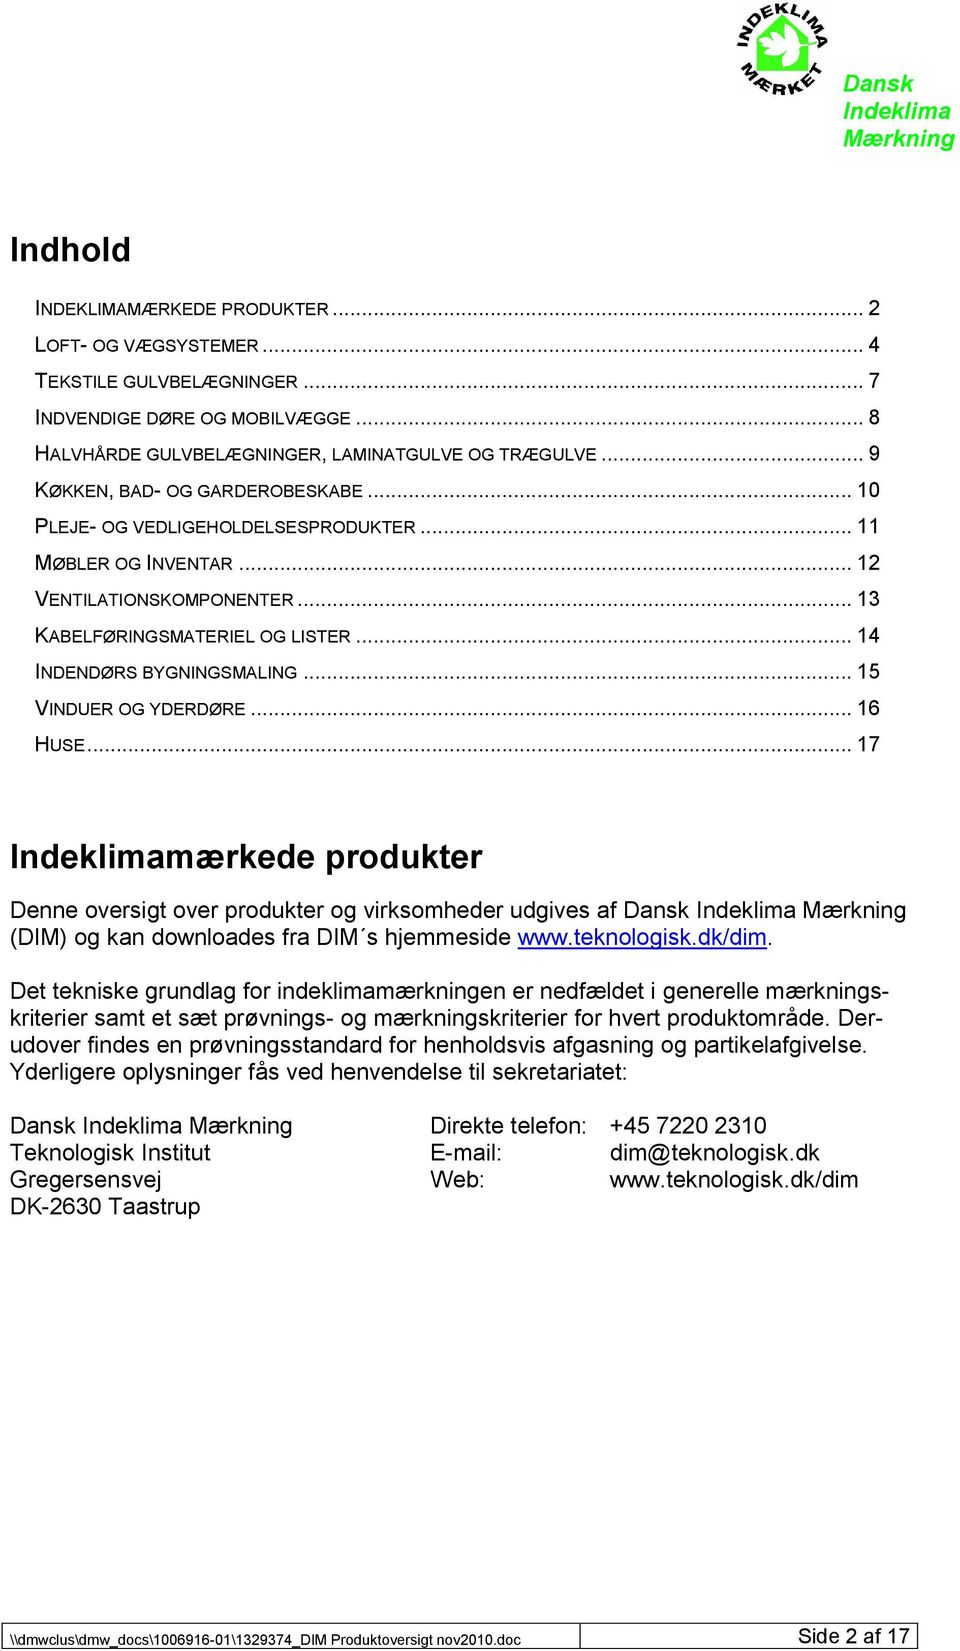 .. 15 VINDUER OG YDERDØRE... 16 HUSE... 17 mærkede produkter Denne oversigt over produkter og virksomheder udgives af Dansk (DIM) og kan downloades fra DIM s hjemmeside www.teknologisk.dk/dim.